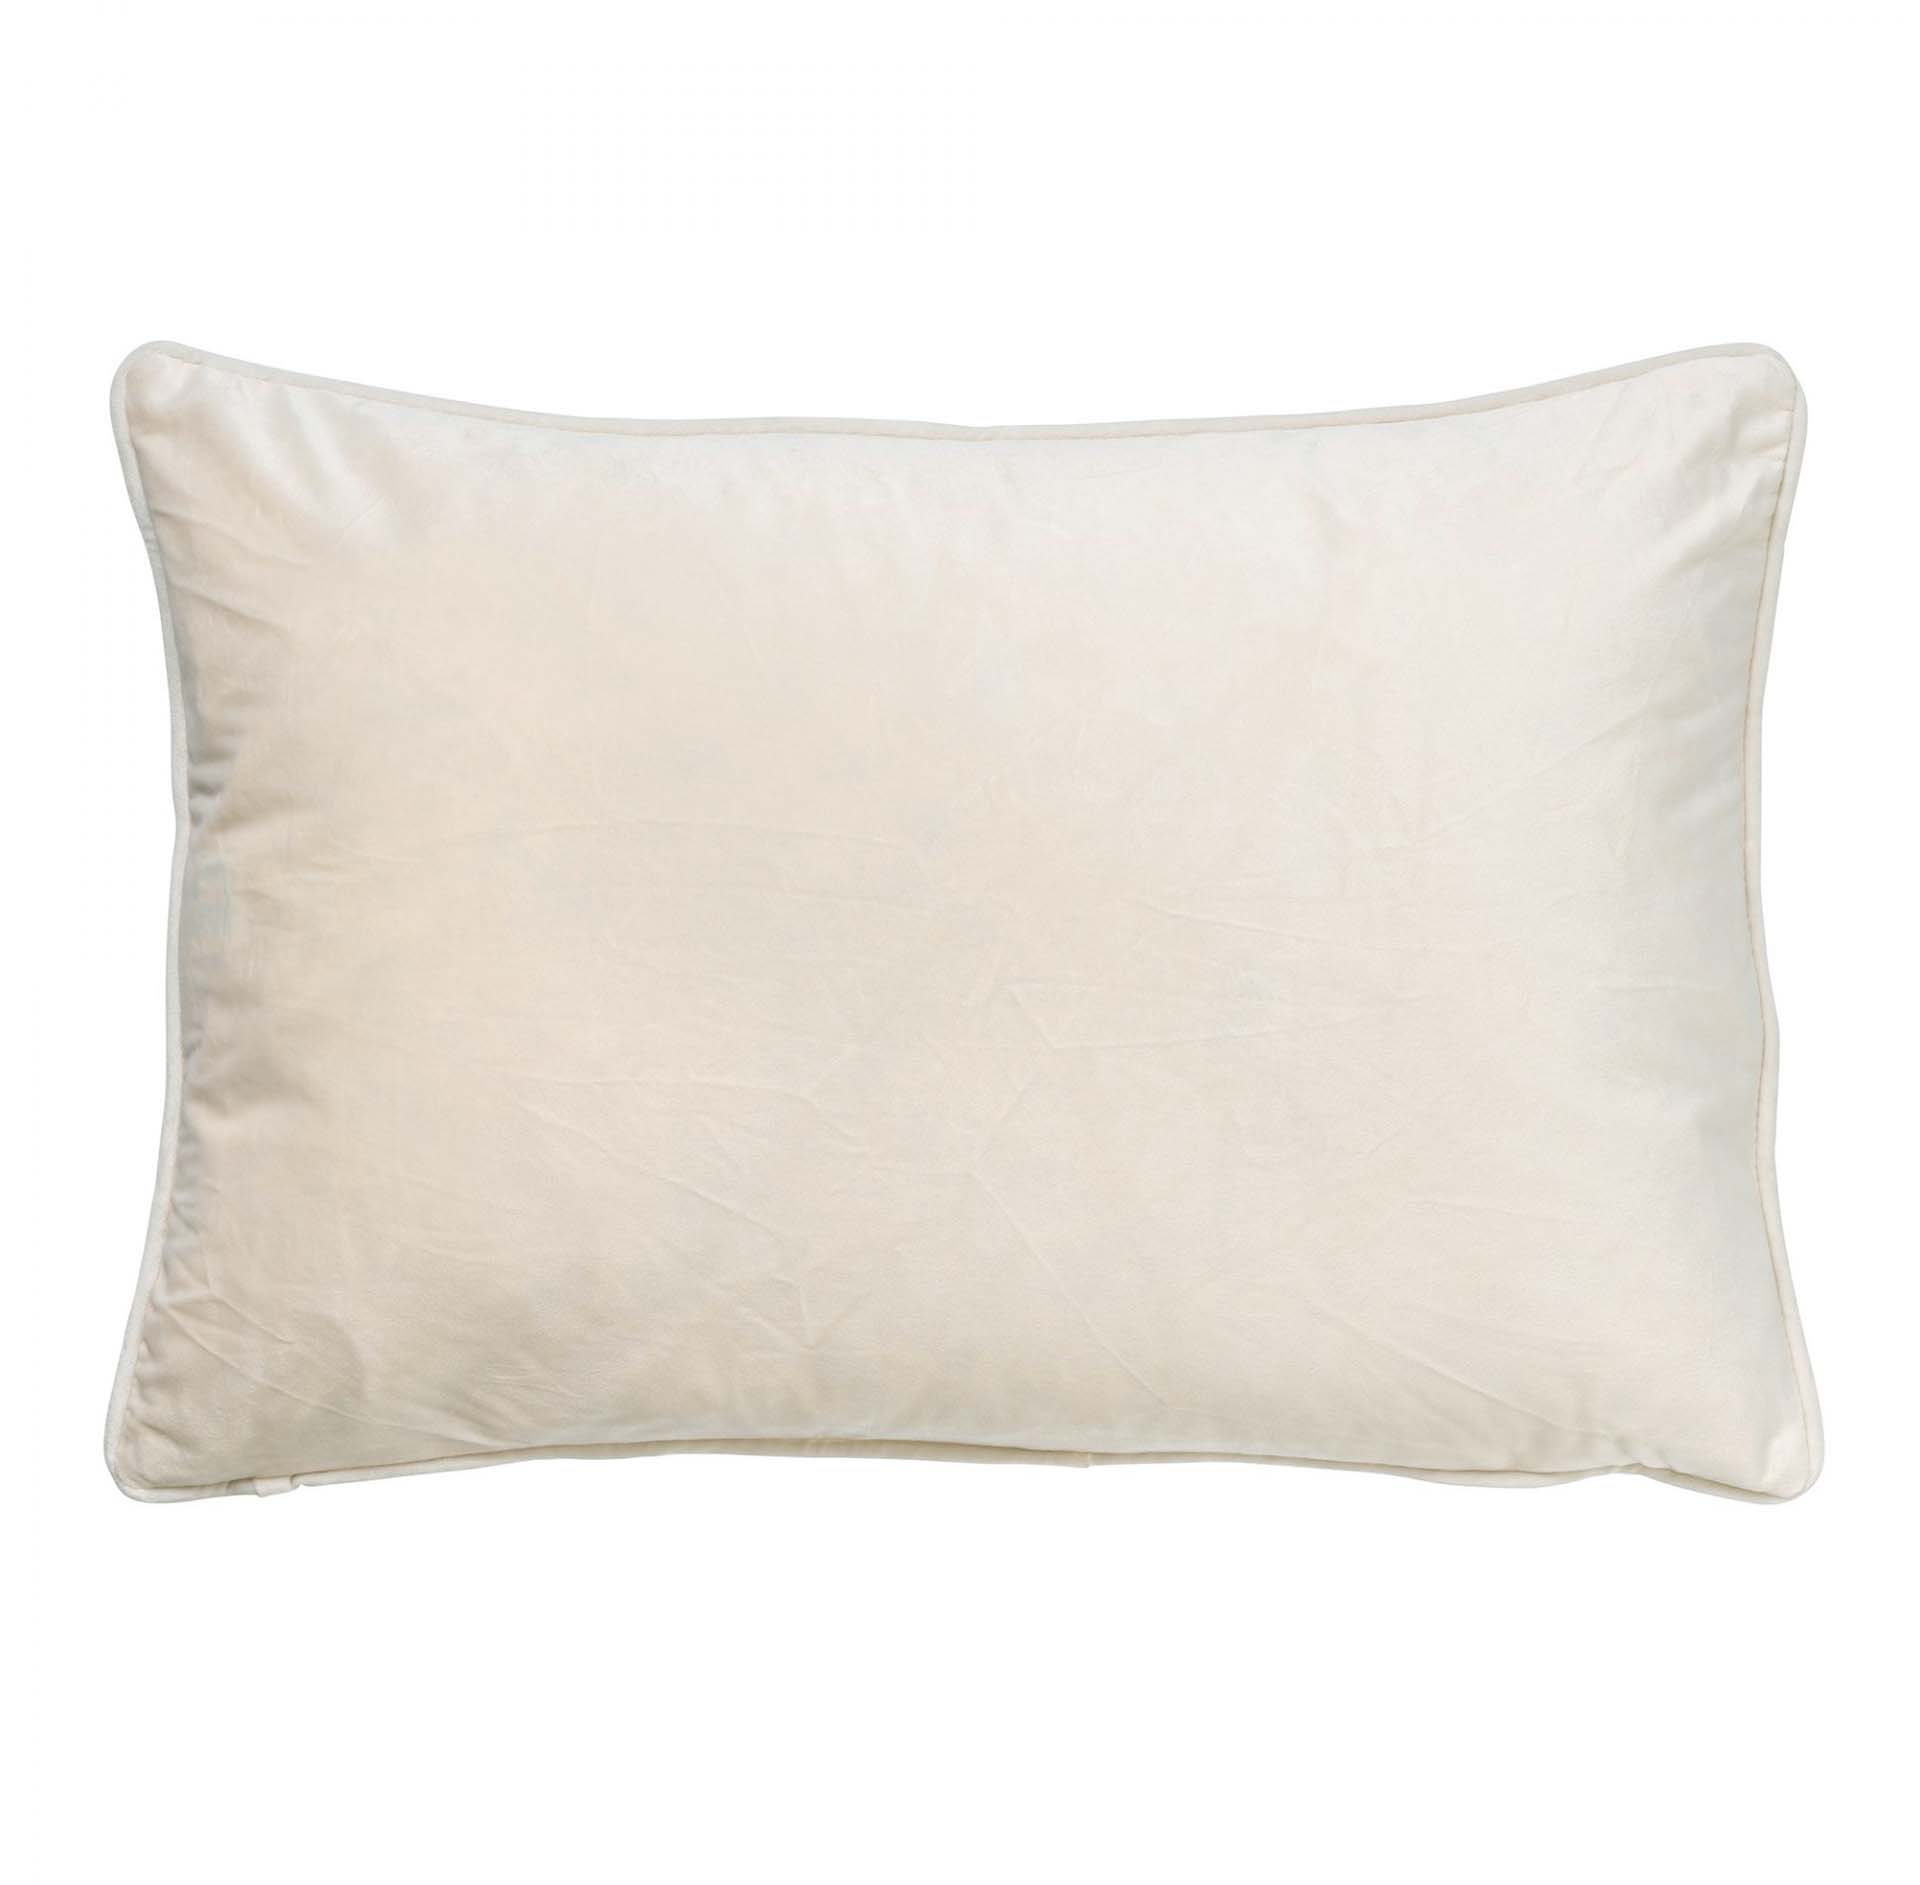 FINN - Cushion velvet 40x60 cm - Snow White - white / off-white